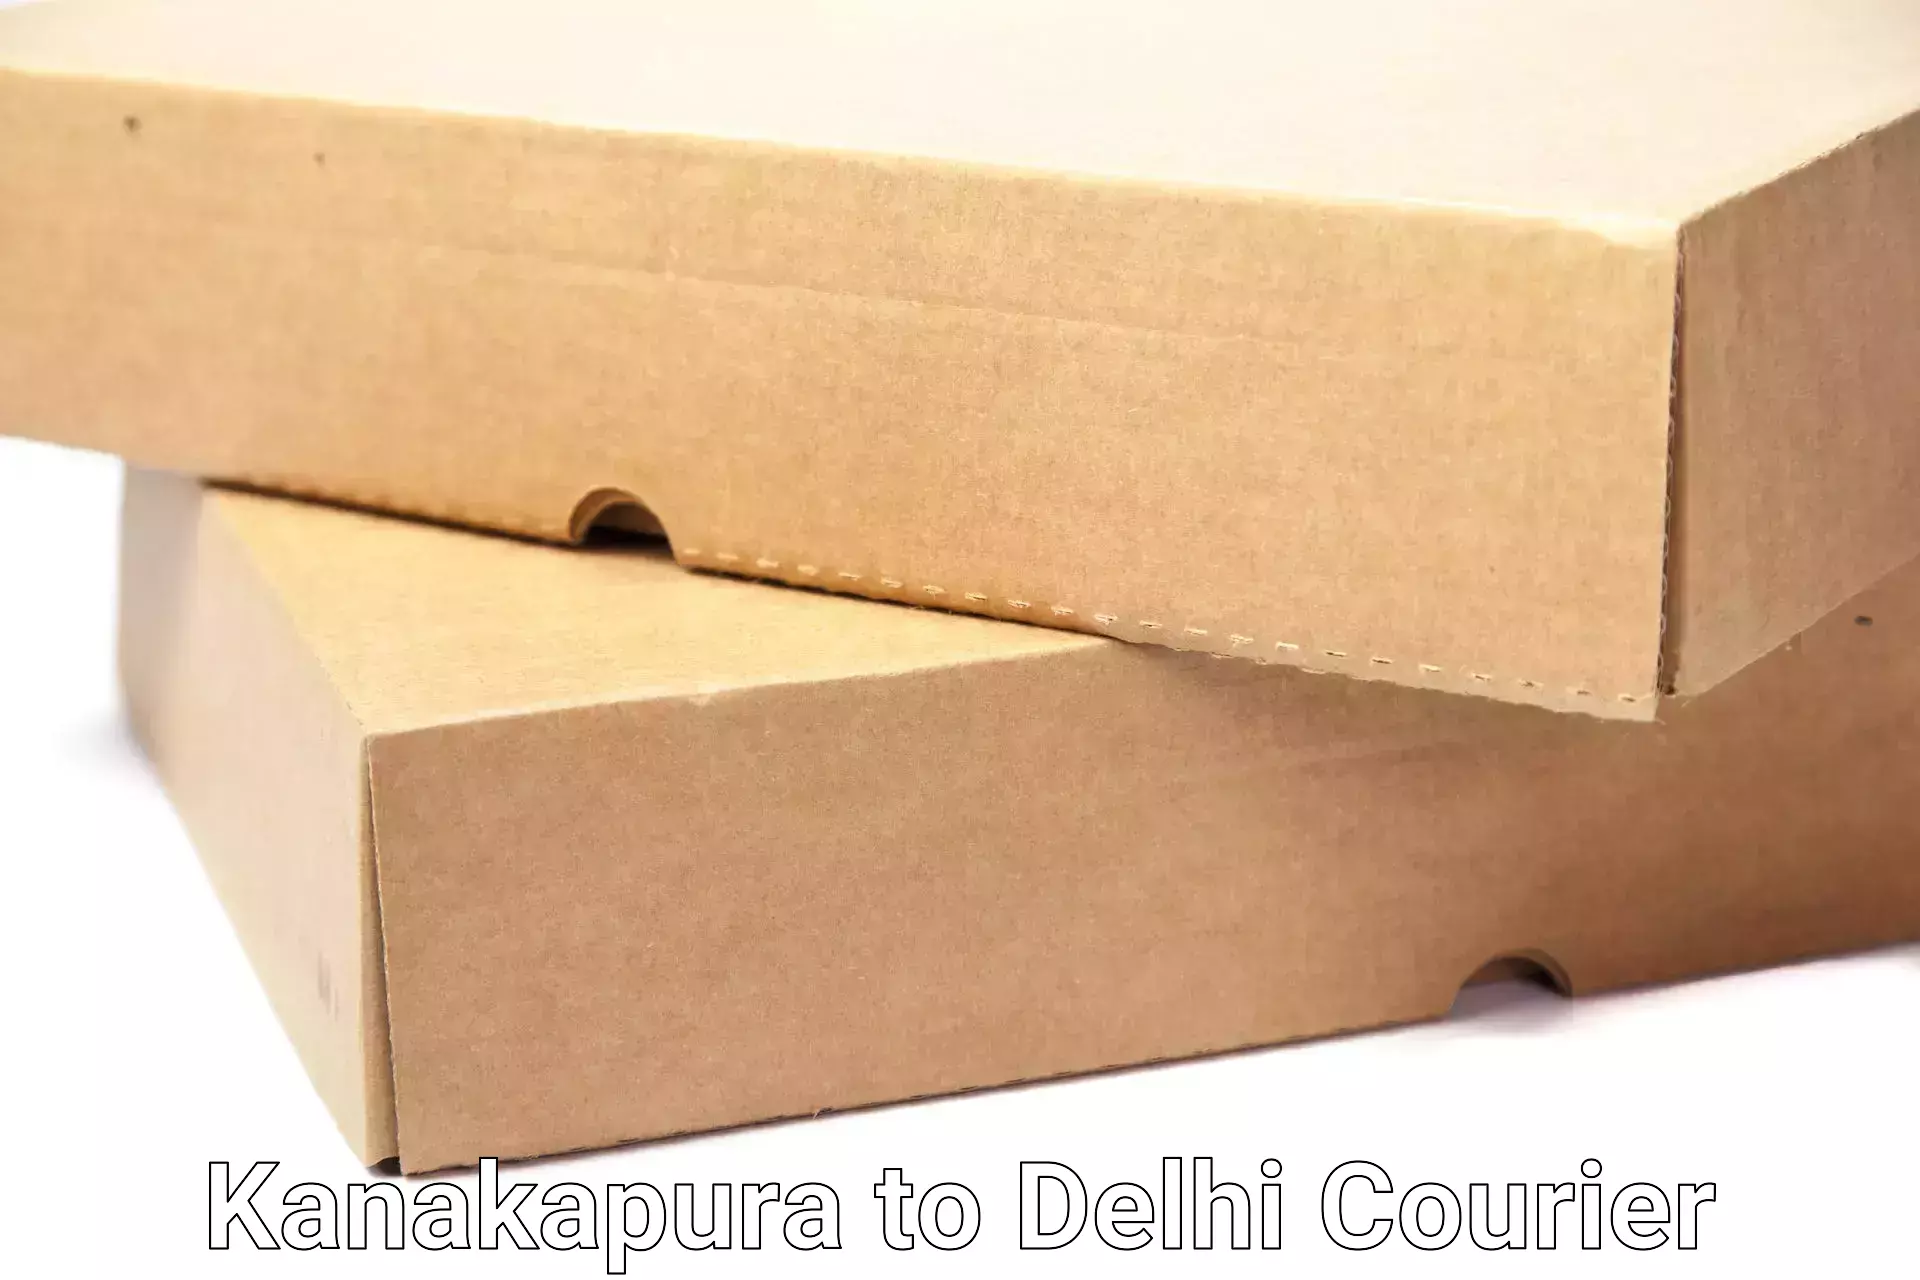 Trusted moving company Kanakapura to Jamia Millia Islamia New Delhi